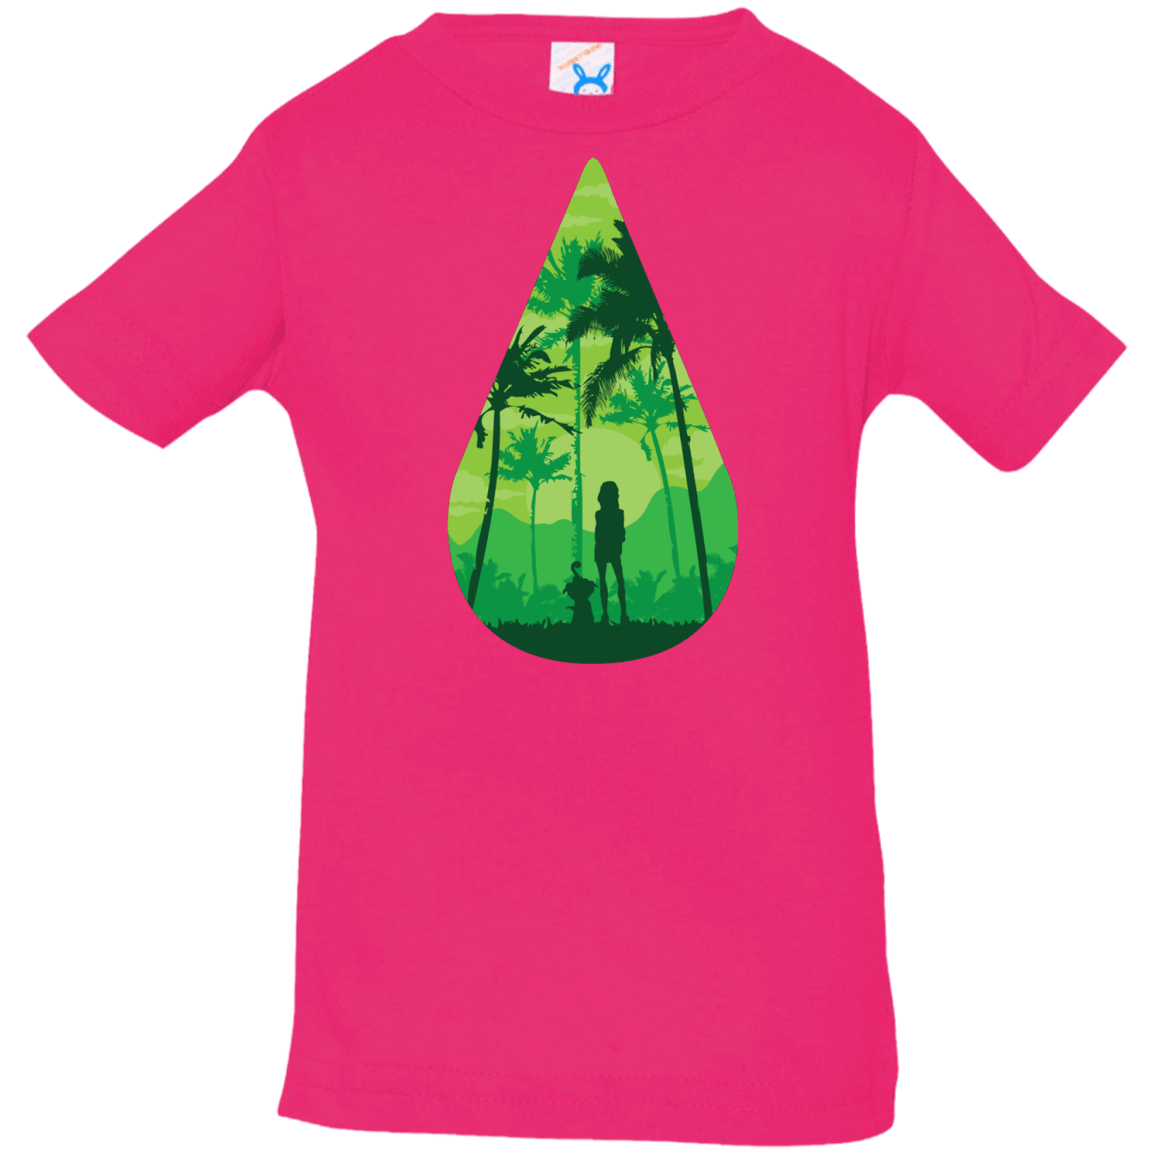 T-Shirts Hot Pink / 6 Months Sincerity Infant Premium T-Shirt